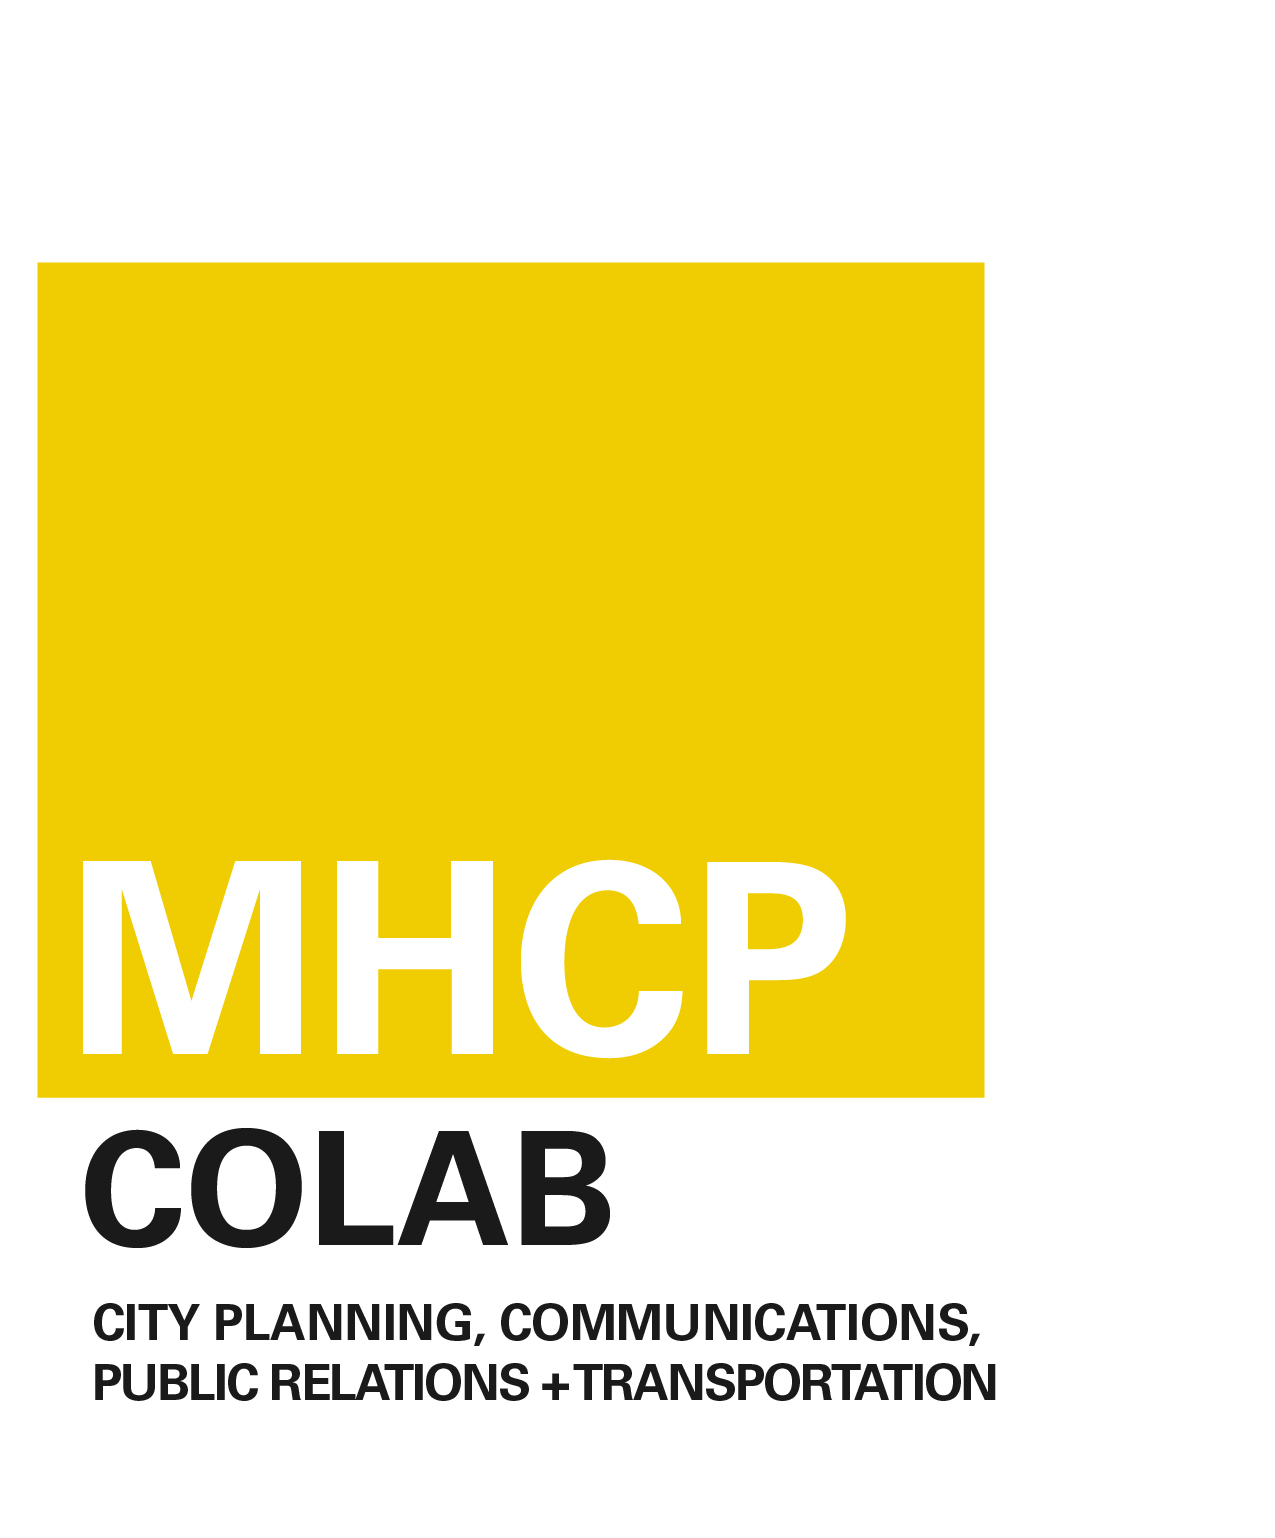 MHCP COLAB